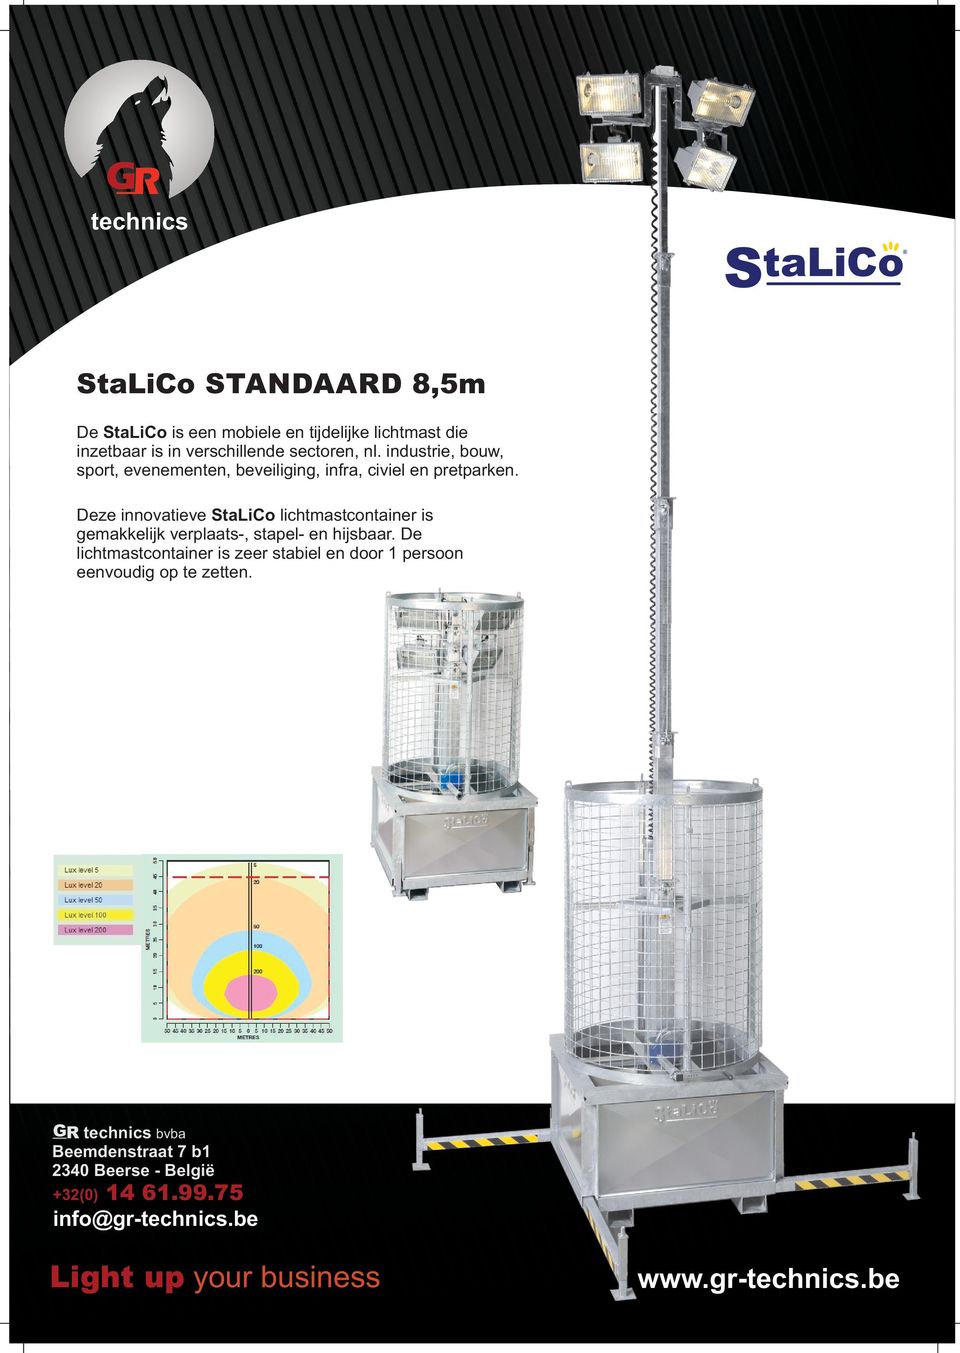 Deze innovatieve StaLiCo lichtmastcontainer is gemakkelijk verplaats-, stapel- en hijsbaar.